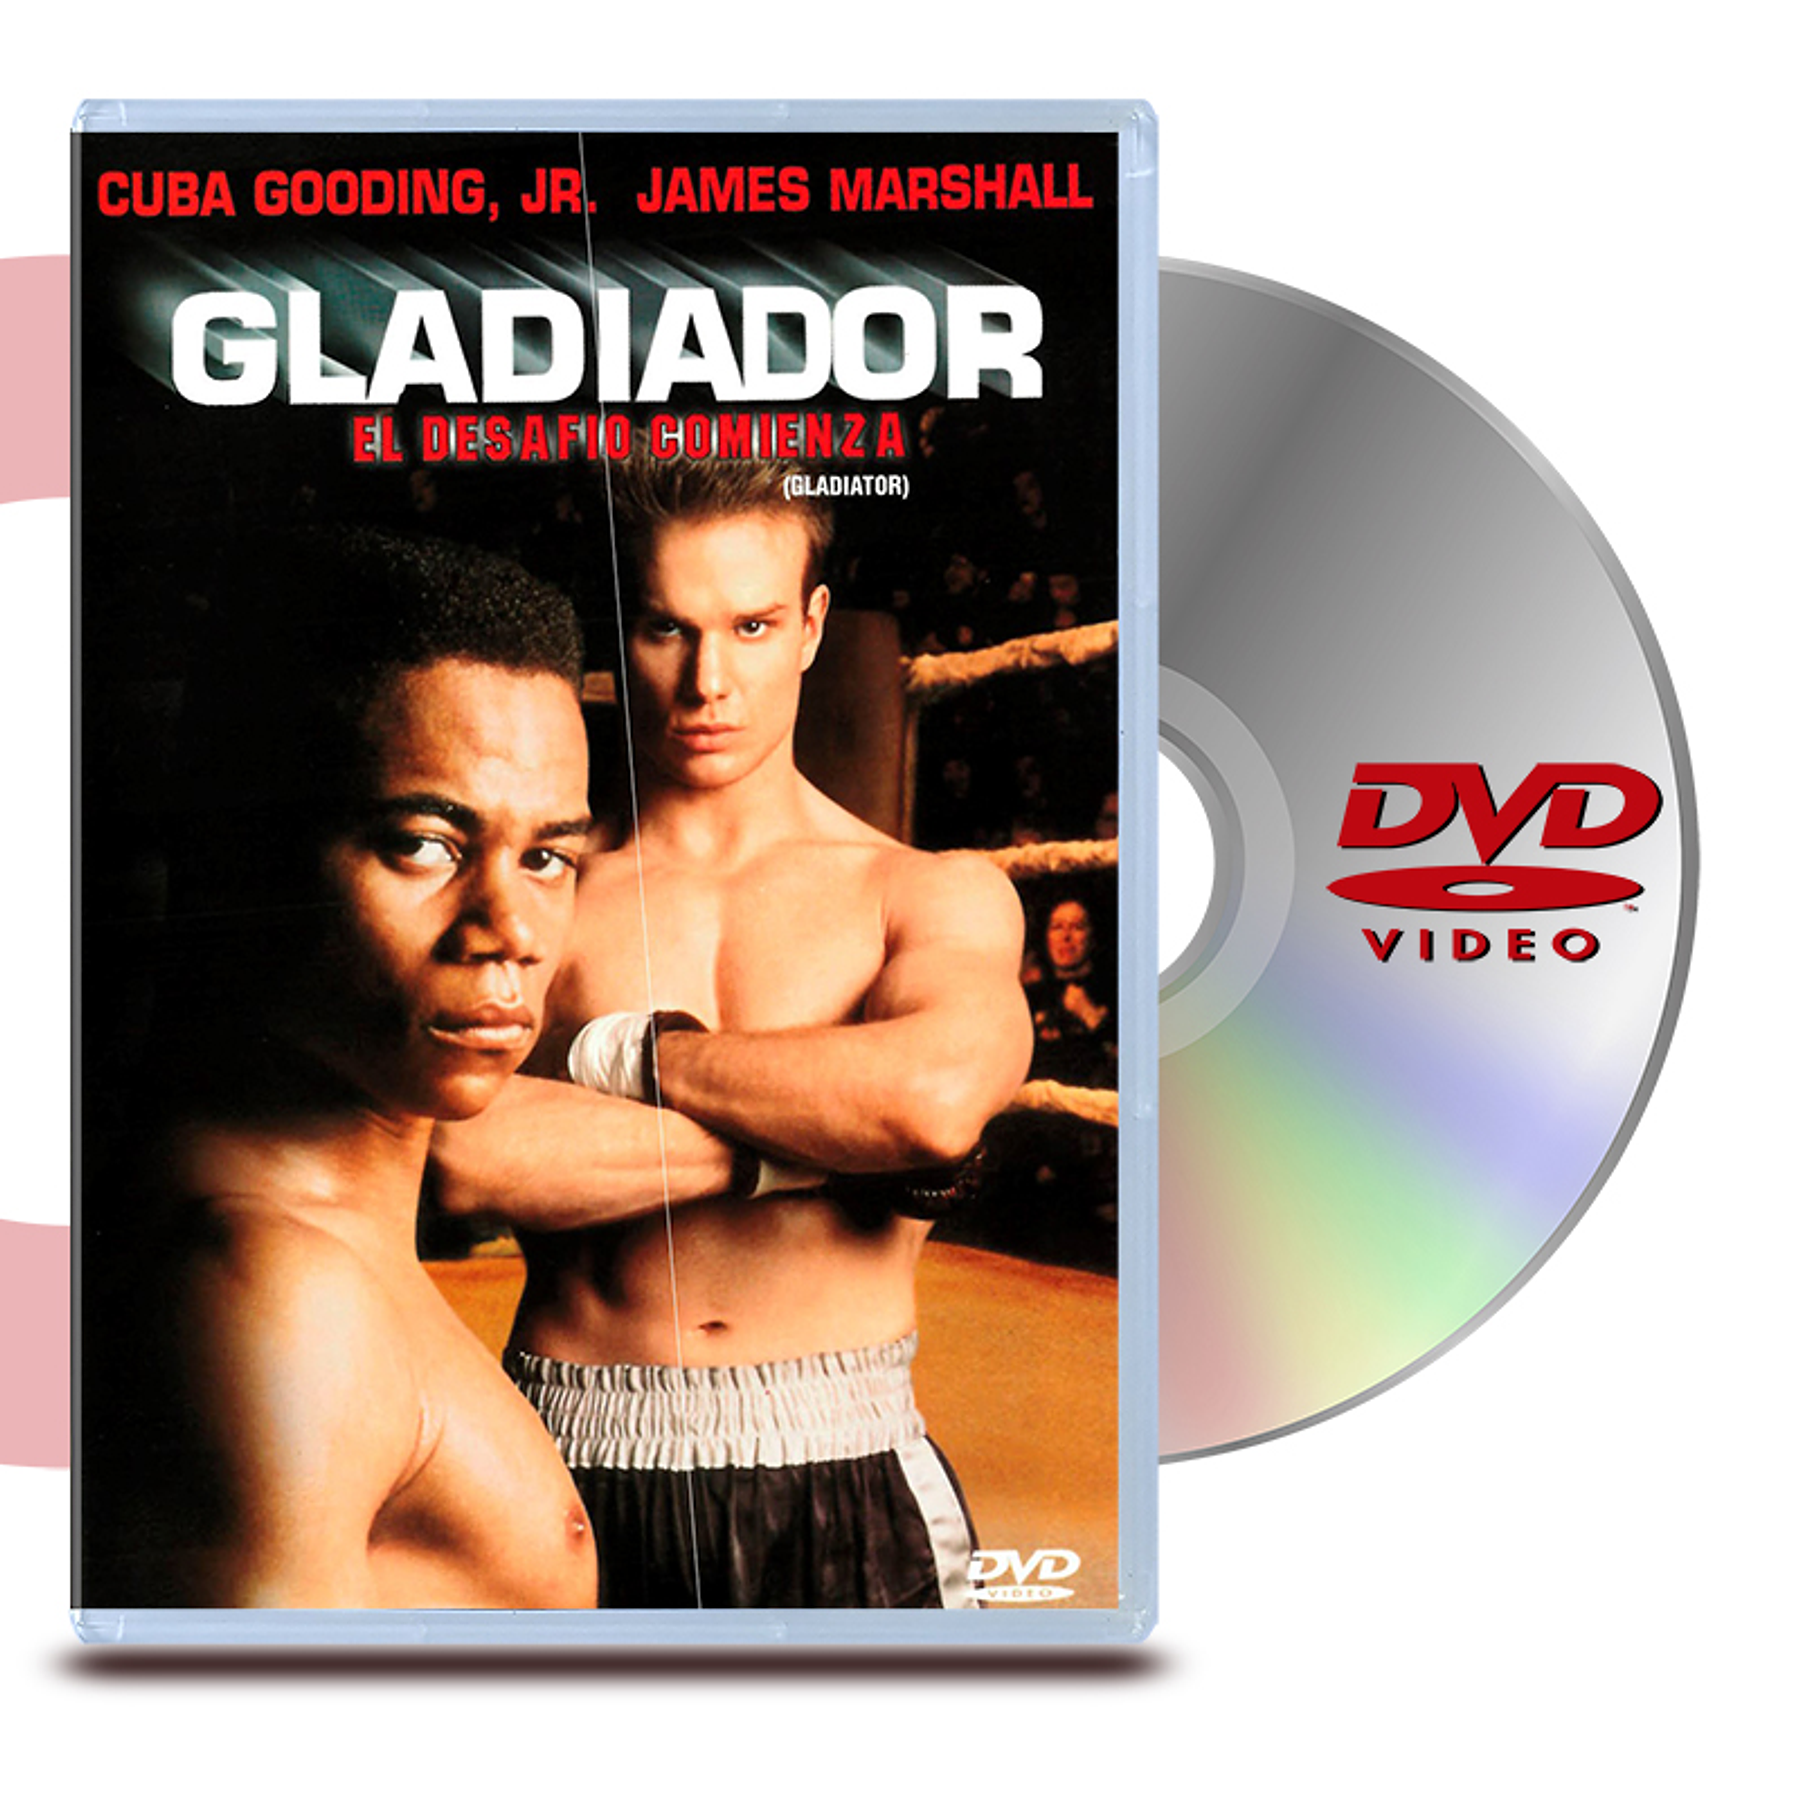 DVD GLADIADOR